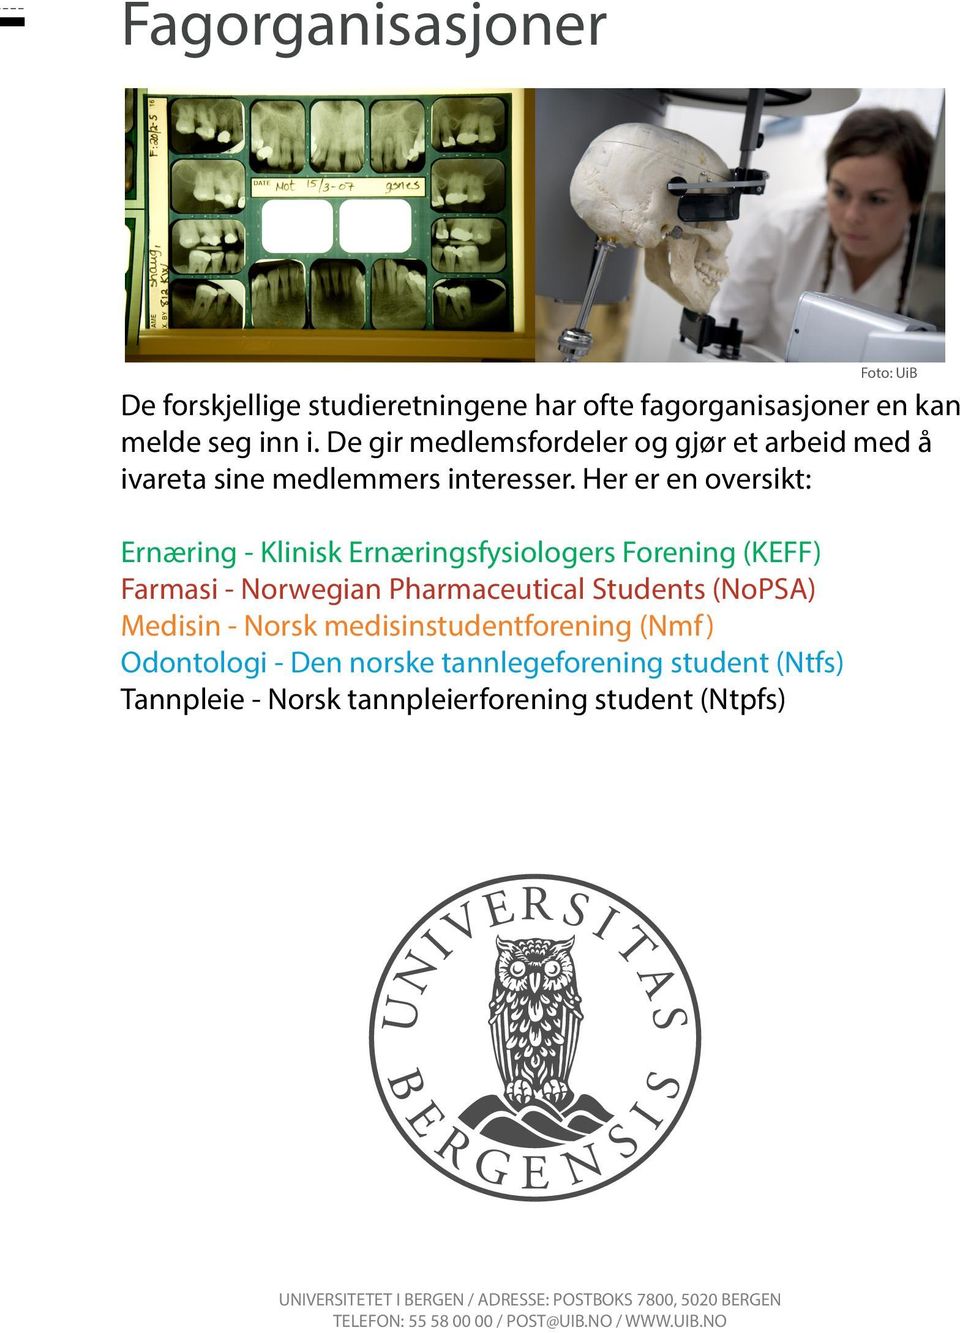 Her er en oversikt: Ernæring - Klinisk Ernæringsfysiologers Forening (KEFF) Farmasi - Norwegian Pharmaceutical Students (NoPSA) Medisin - Norsk